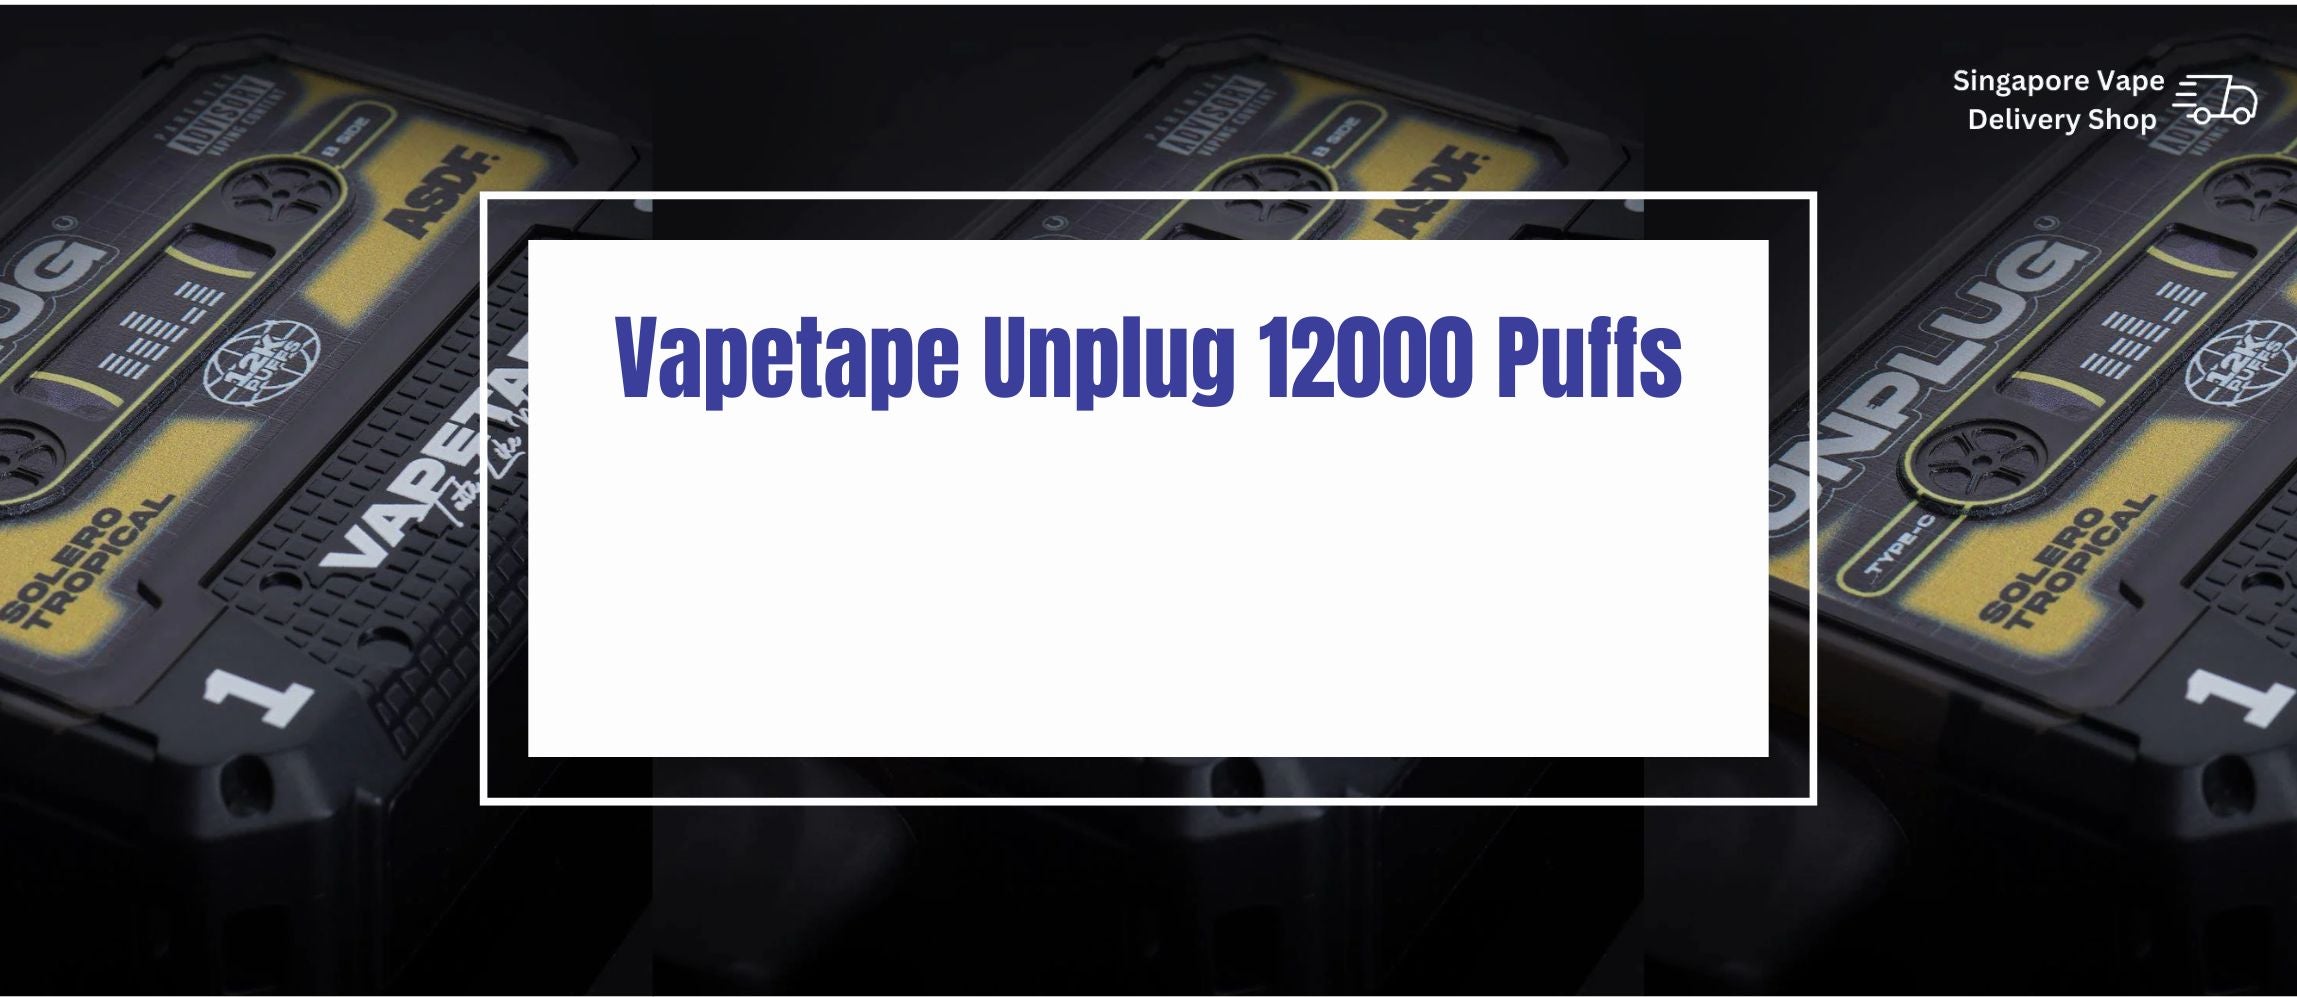 Vapetape-unplug-12000-banner